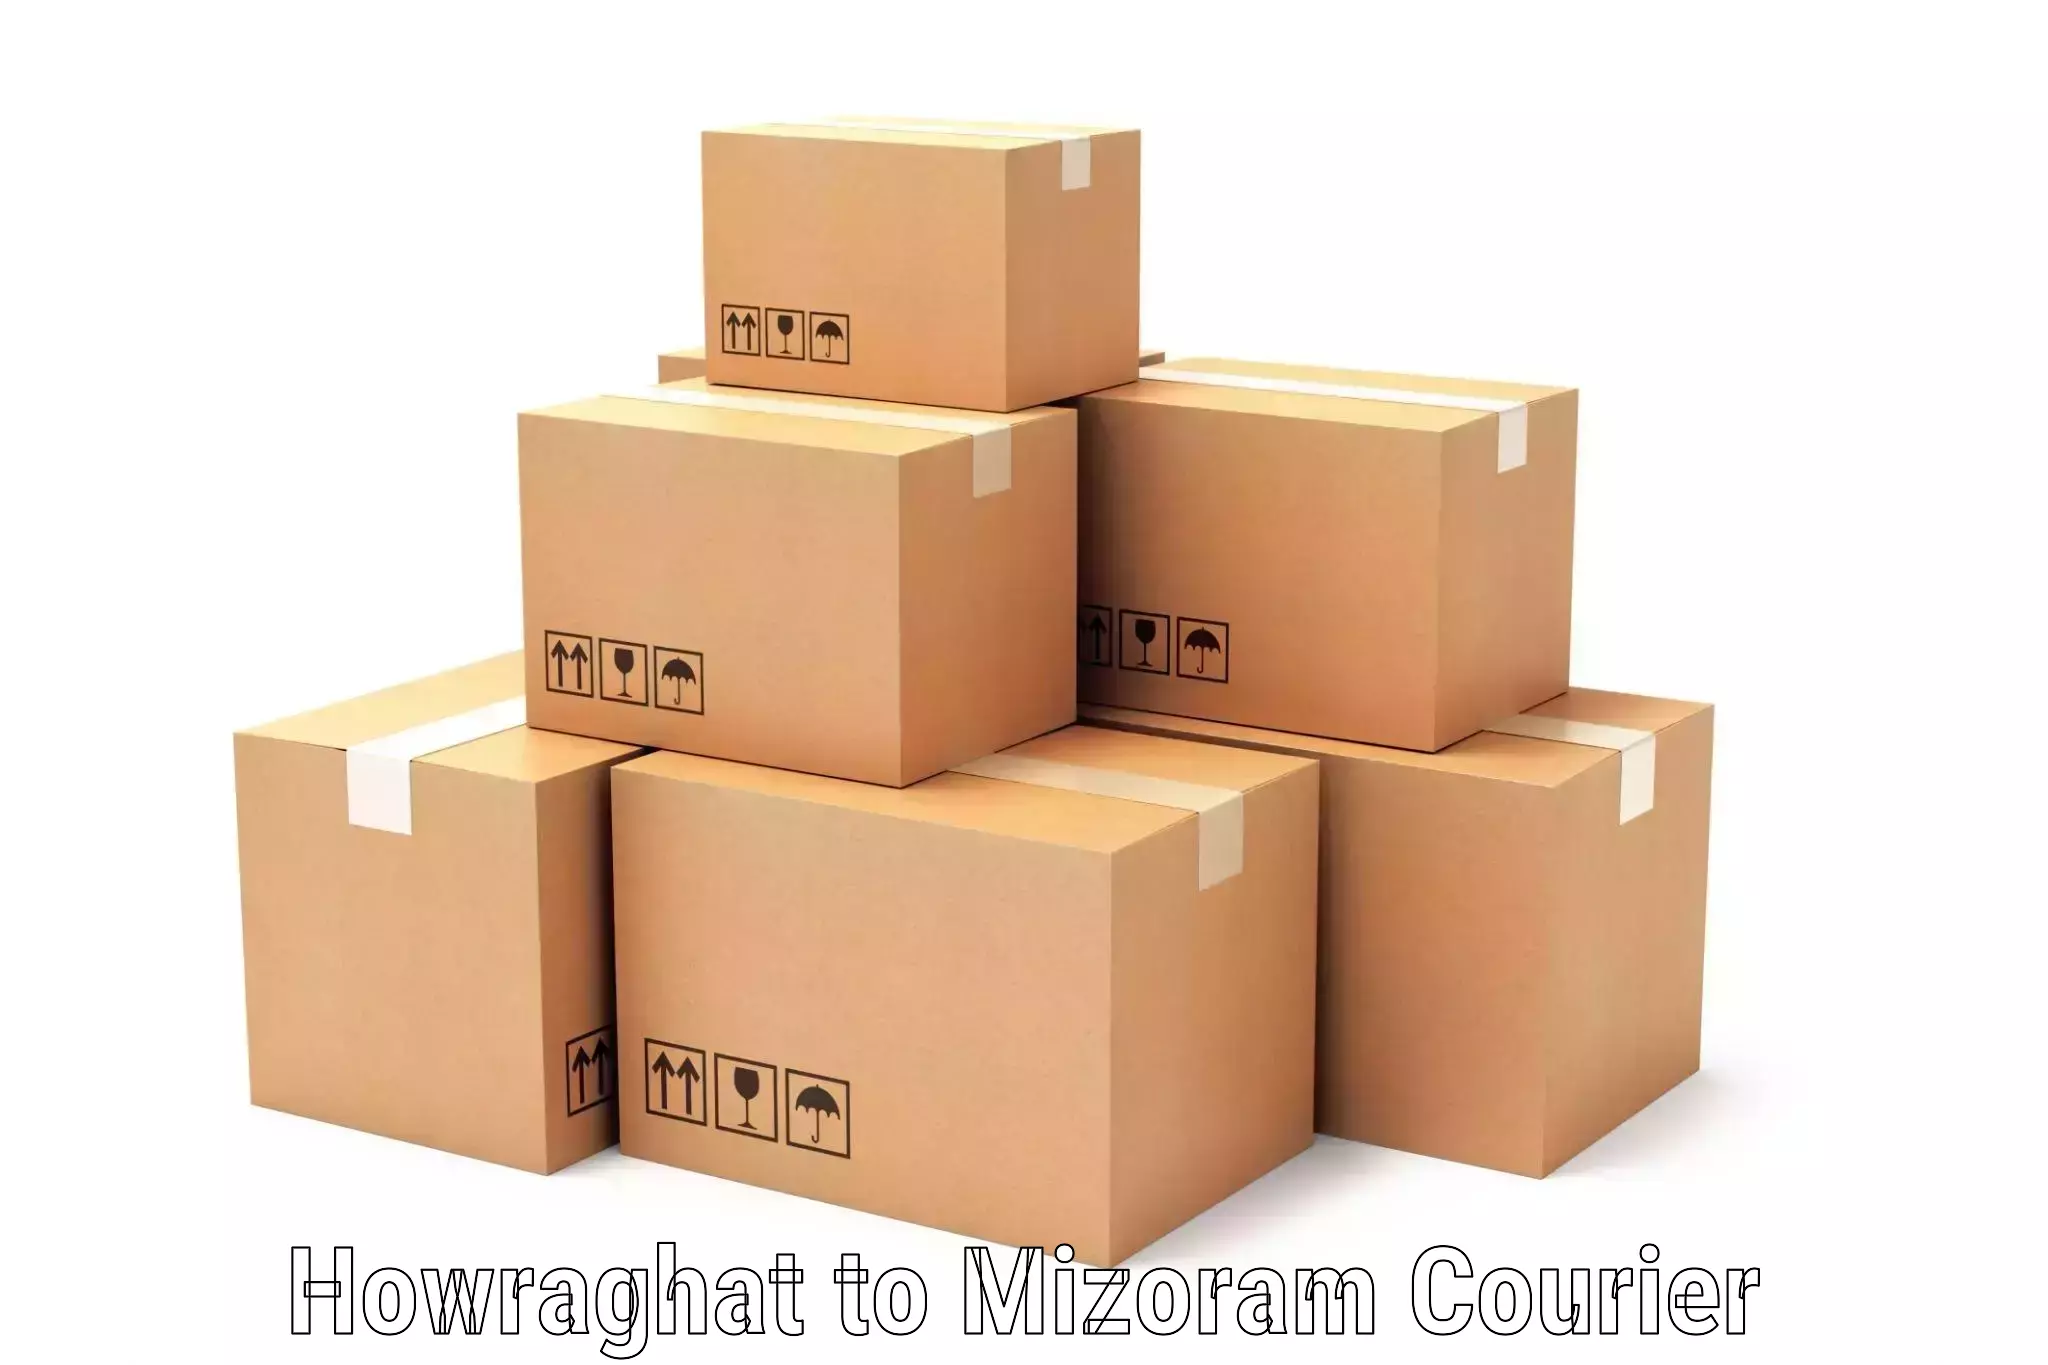 Efficient cargo handling Howraghat to Mizoram